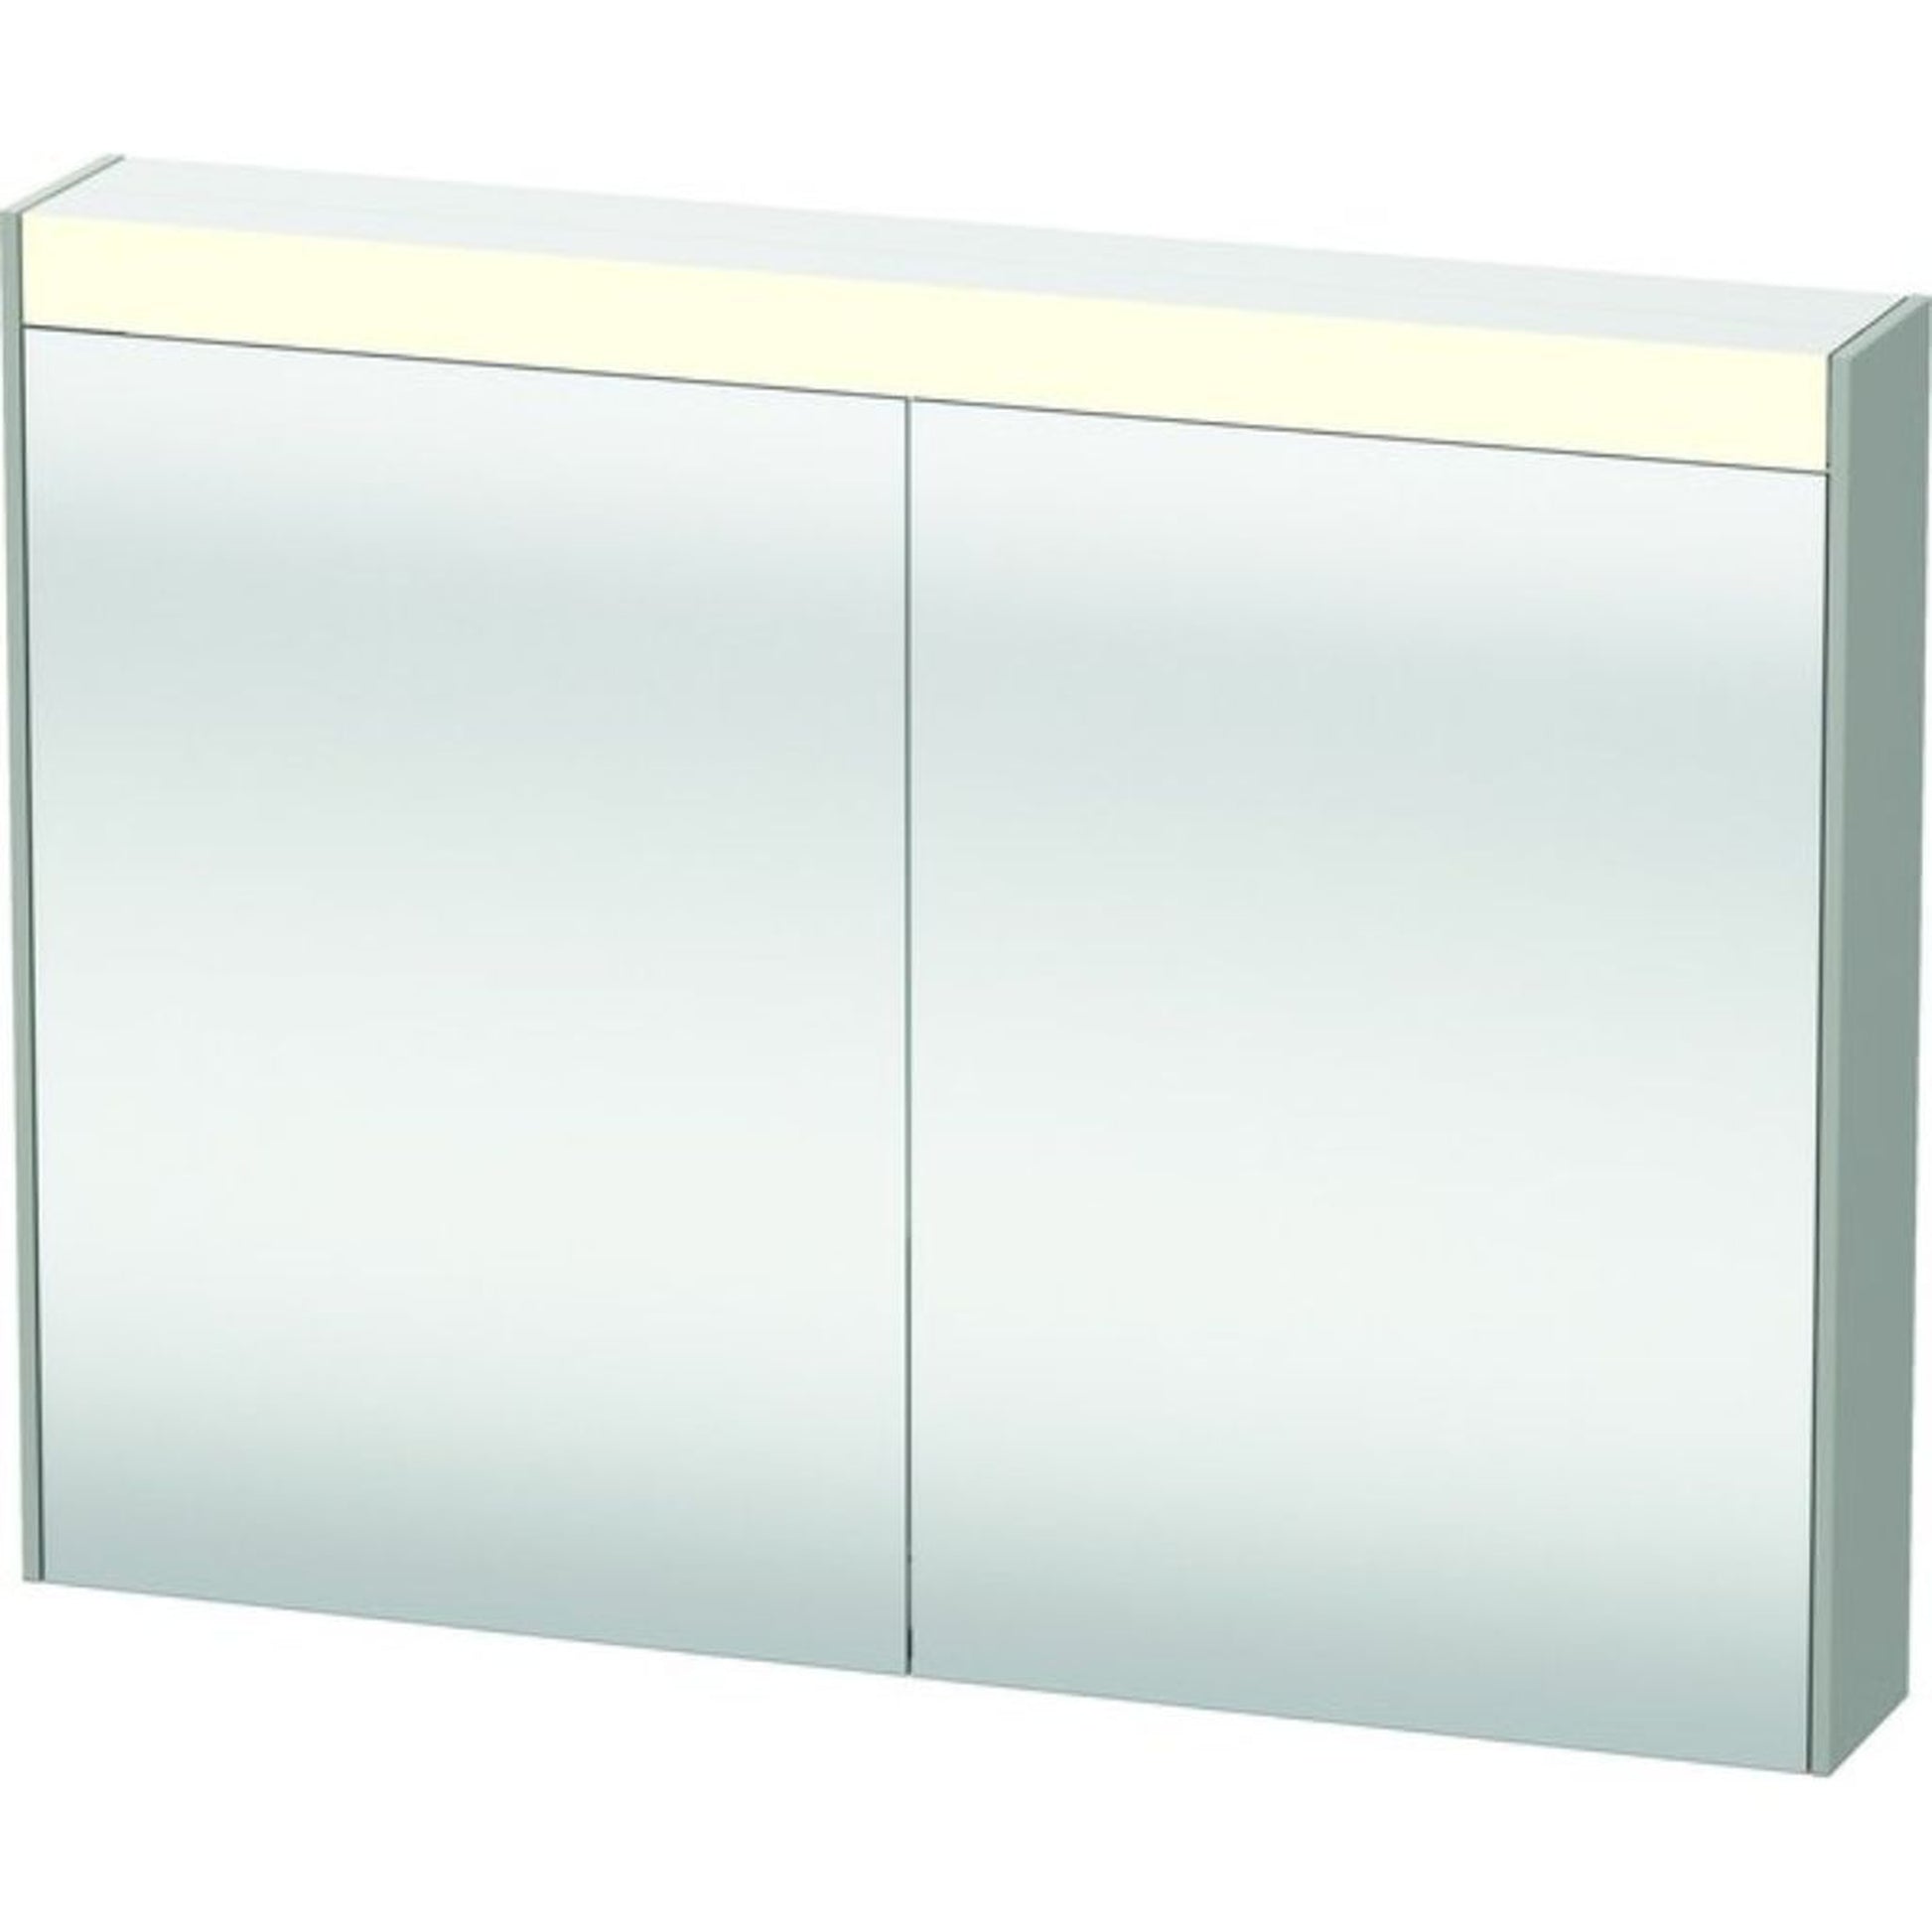 Duravit Brioso 32" x 30" x 6" Mirror Cabinet With Lighting Concrete Grey Matt